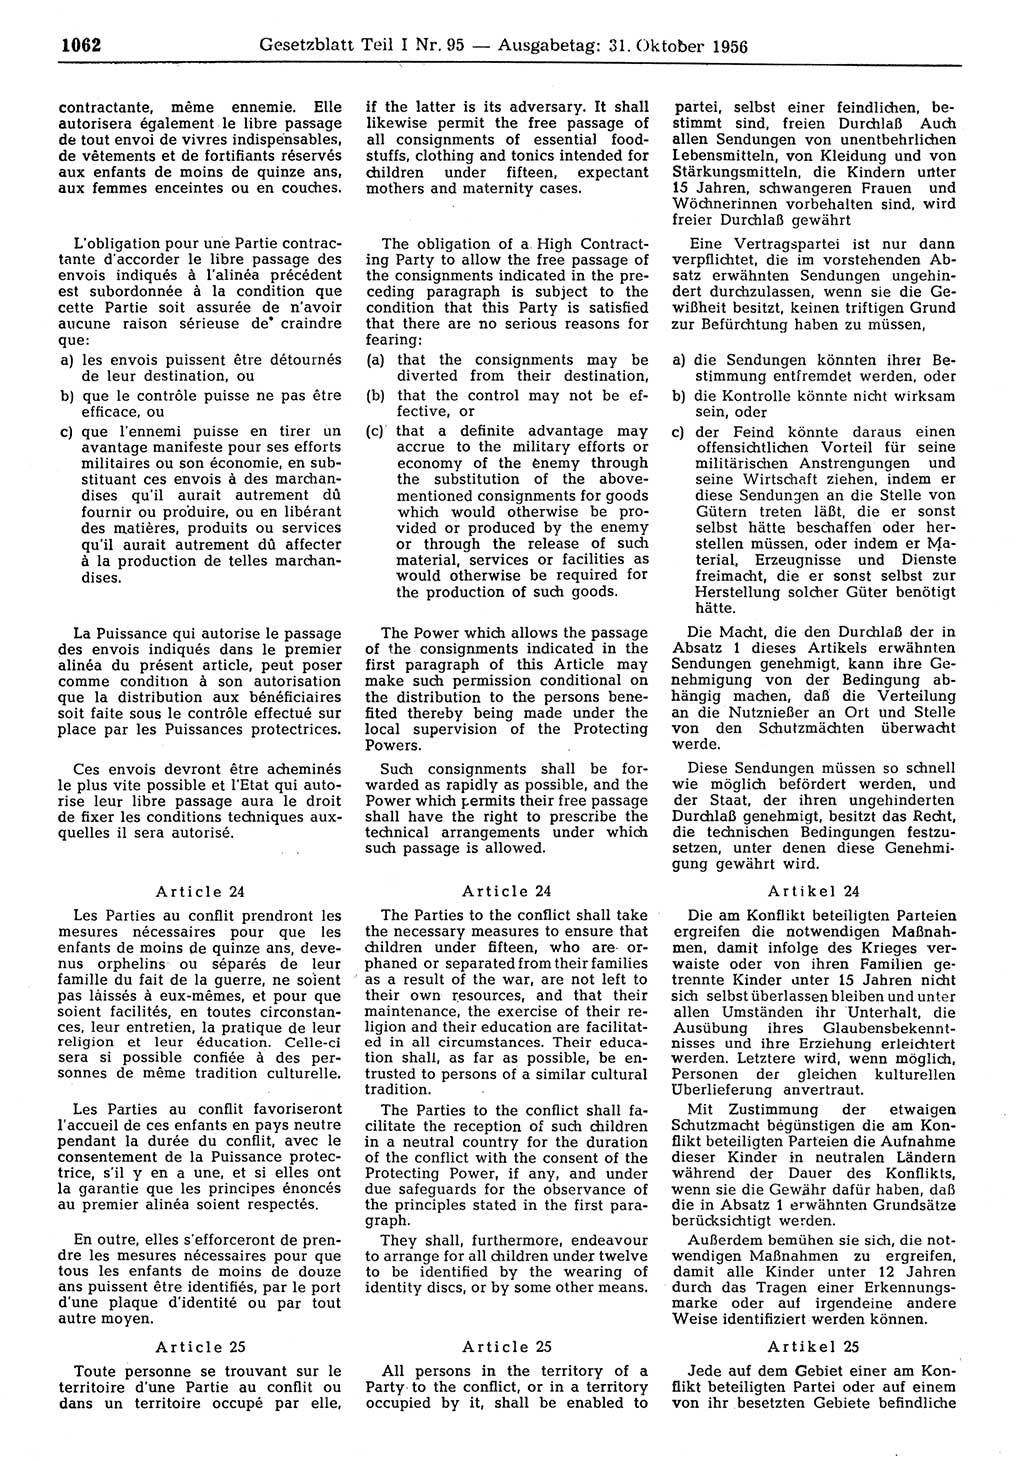 Gesetzblatt (GBl.) der Deutschen Demokratischen Republik (DDR) Teil Ⅰ 1956, Seite 1062 (GBl. DDR Ⅰ 1956, S. 1062)